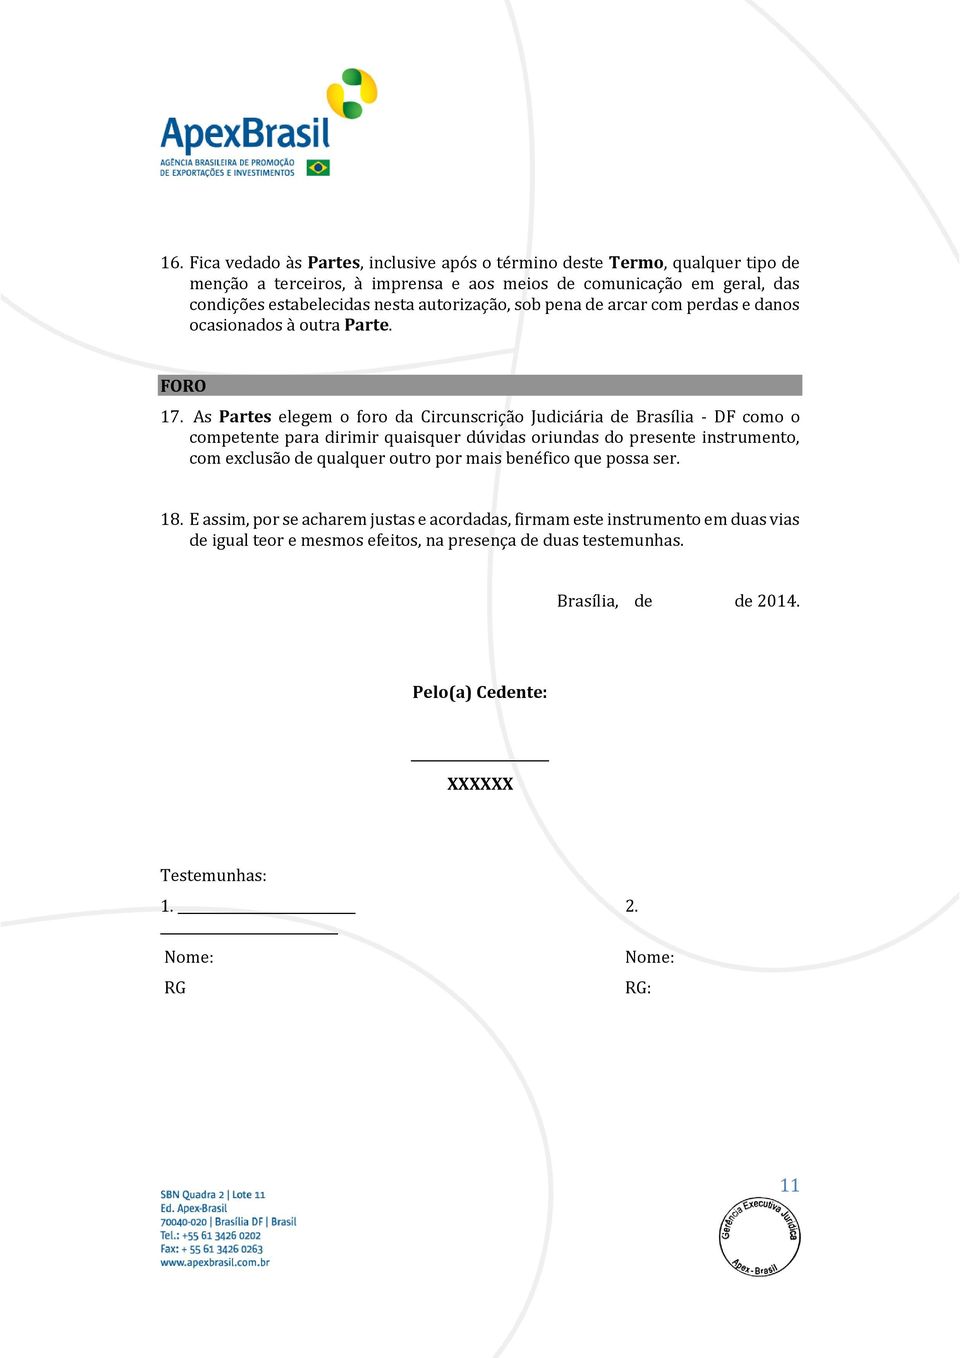 As Partes elegem o foro da Circunscrição Judiciária de Brasília - DF como o competente para dirimir quaisquer dúvidas oriundas do presente instrumento, com exclusão de qualquer